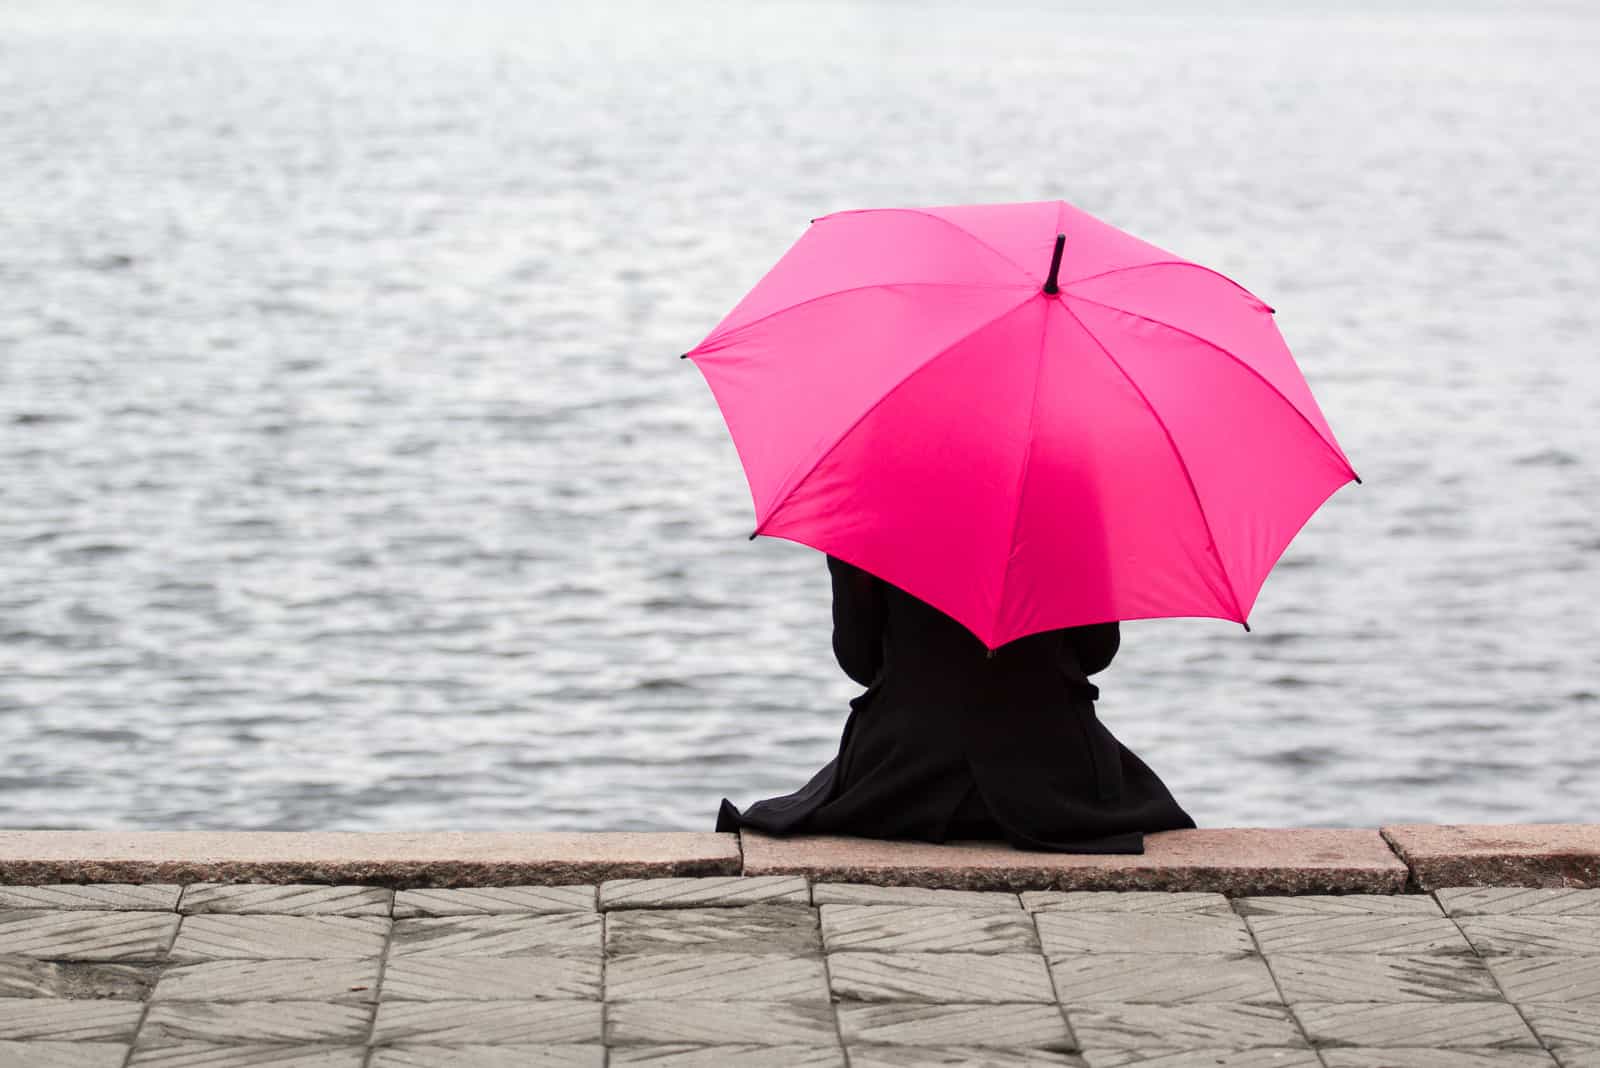 Kvinna som sitter ensamt med det rosa paraplyet